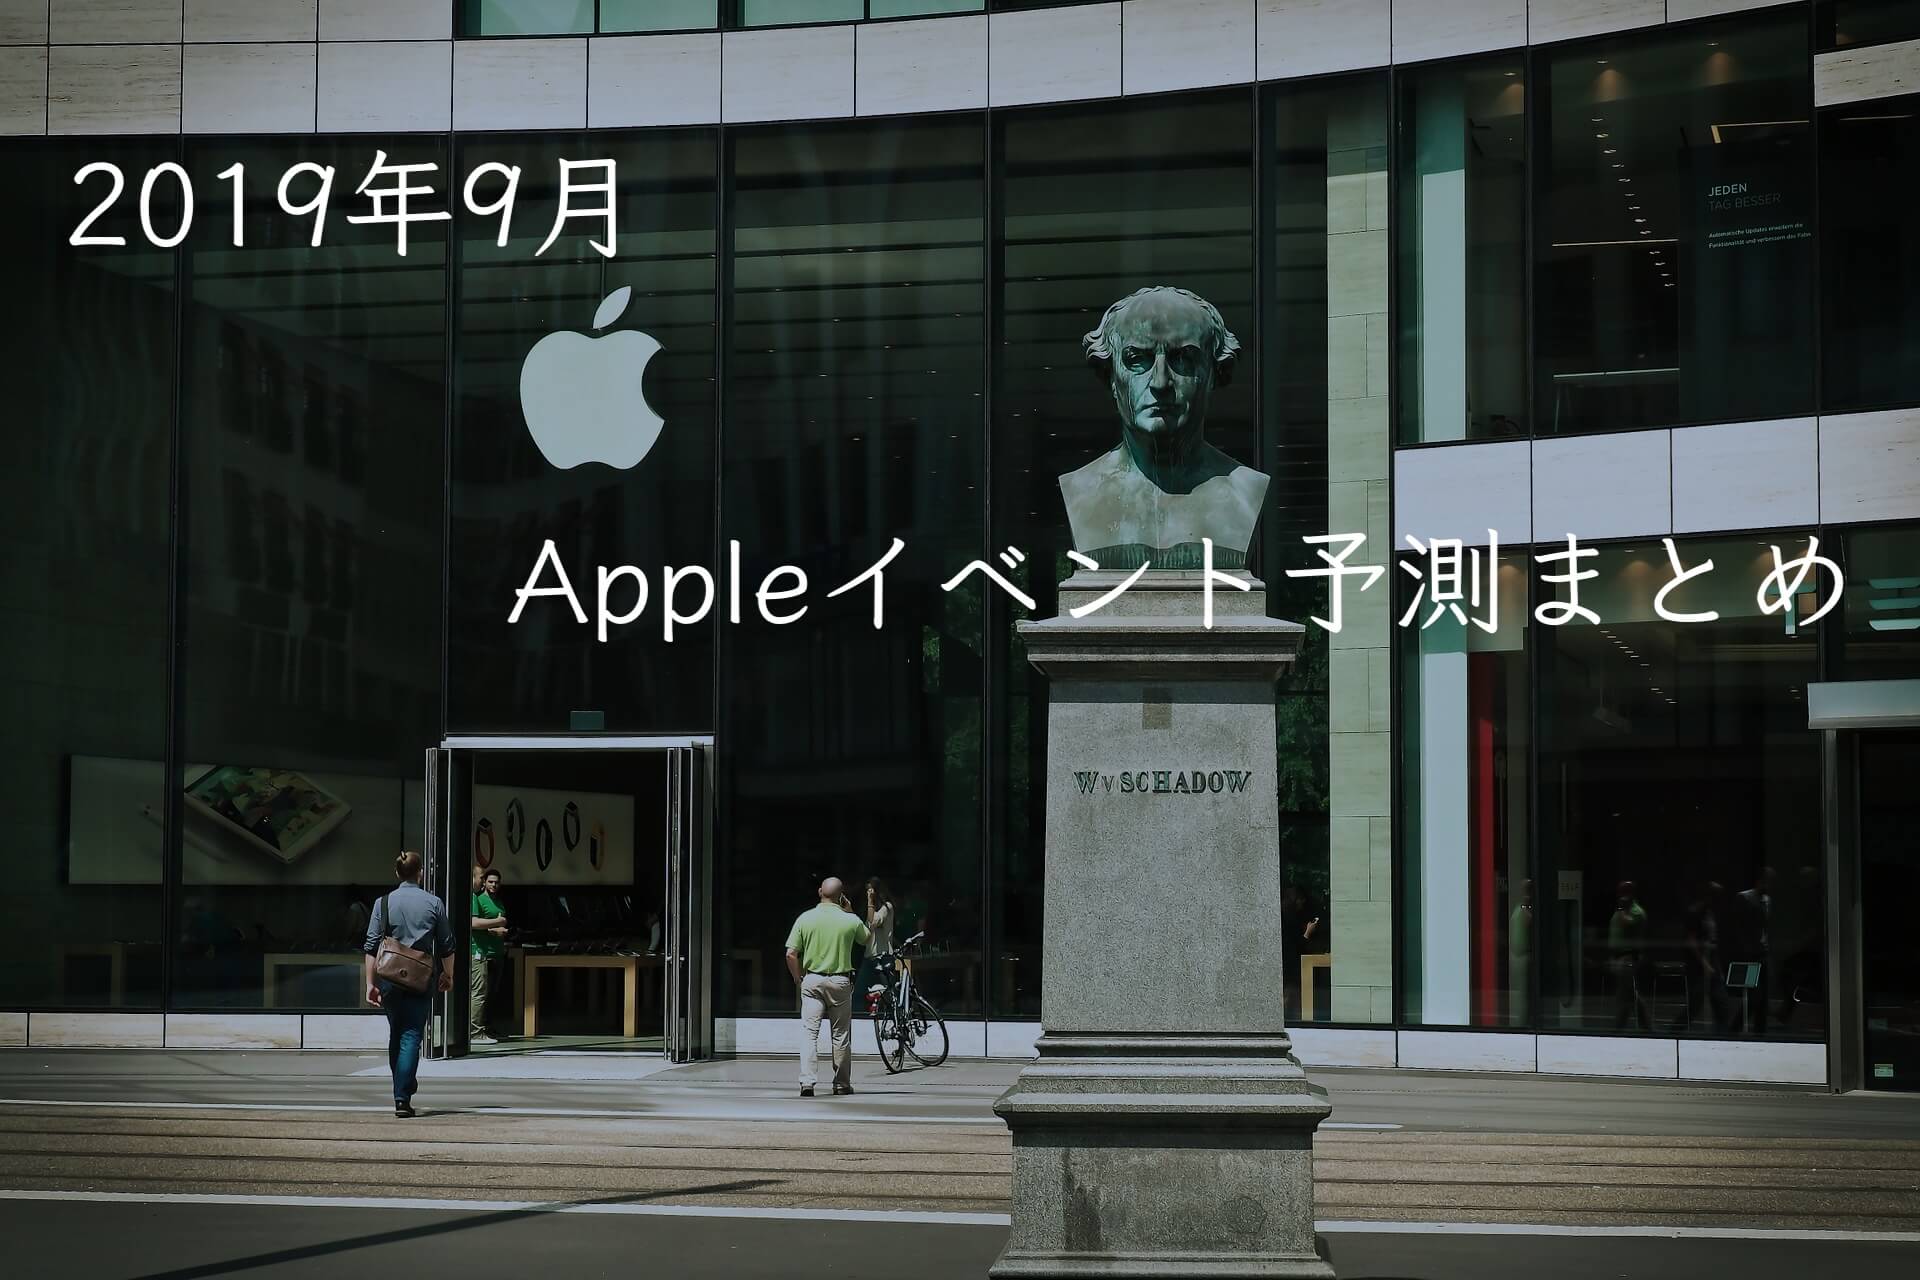 【2019年9月】Appleイベントで発表されそうな11のApple製品まとめ